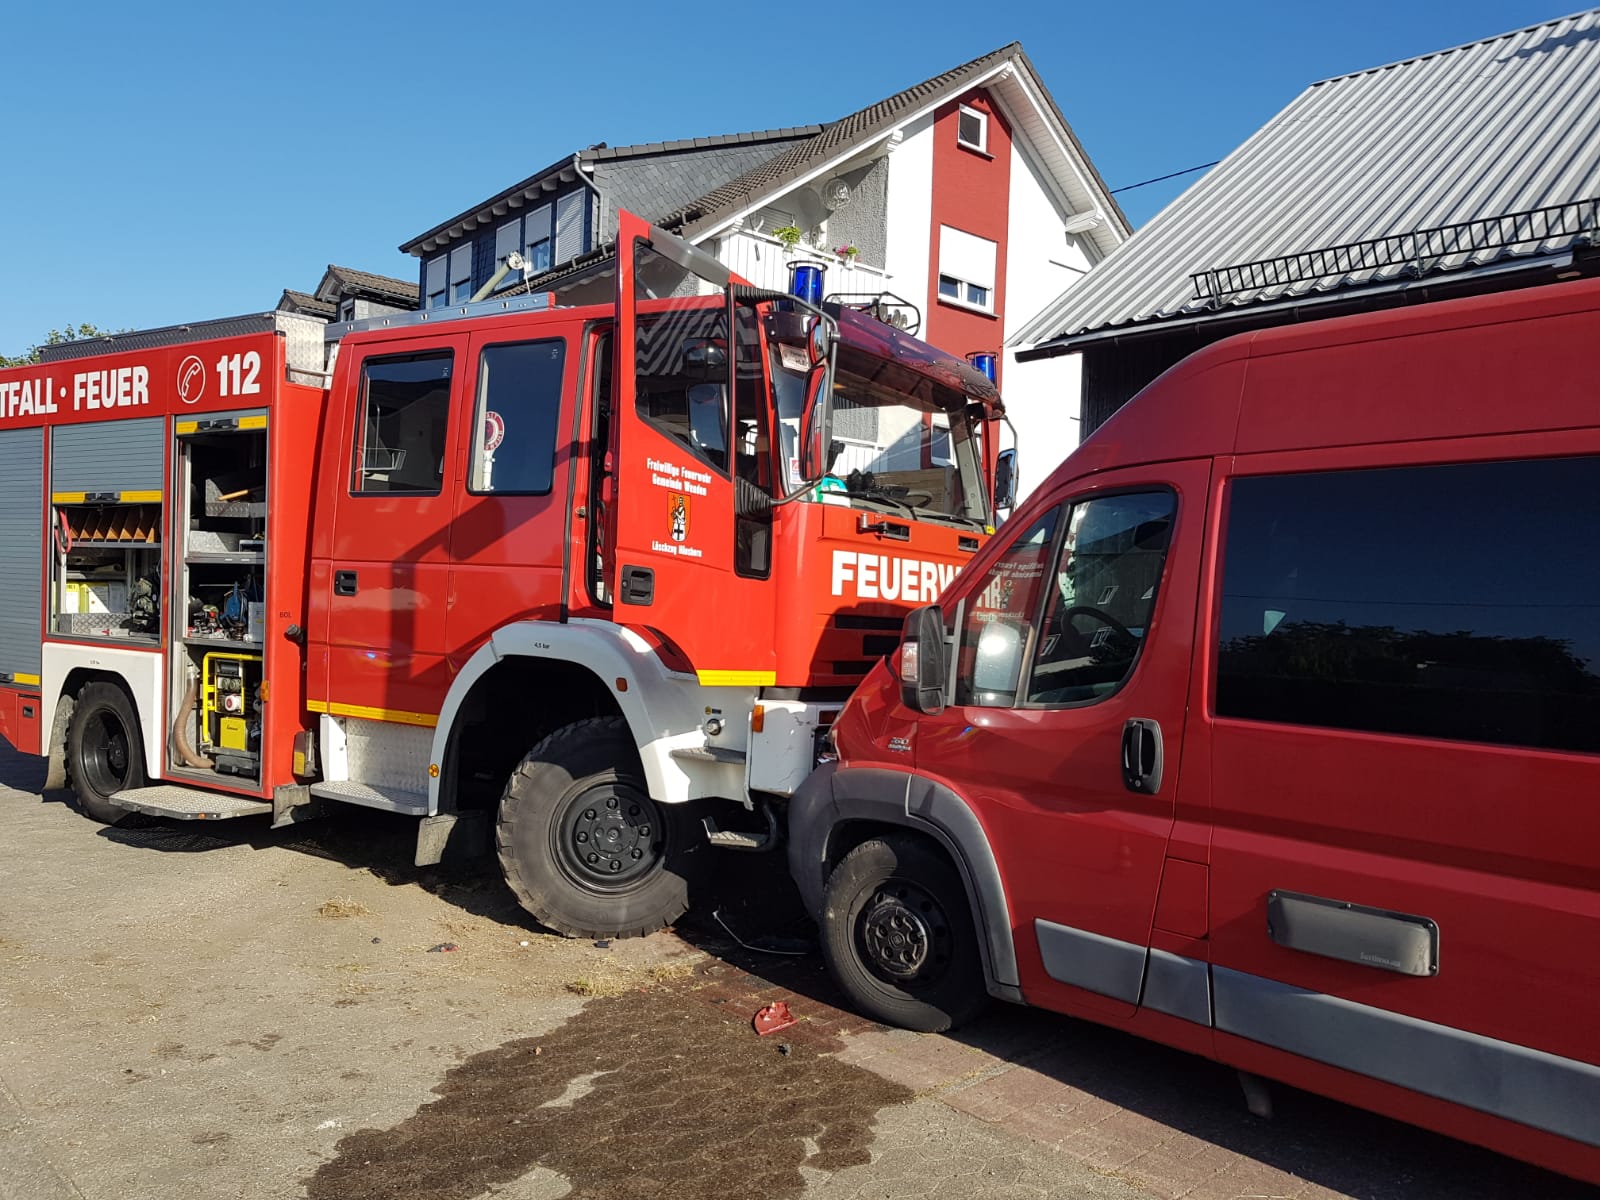 Feuerwehrfahrzeug verunfallt während Einsatzfahrt